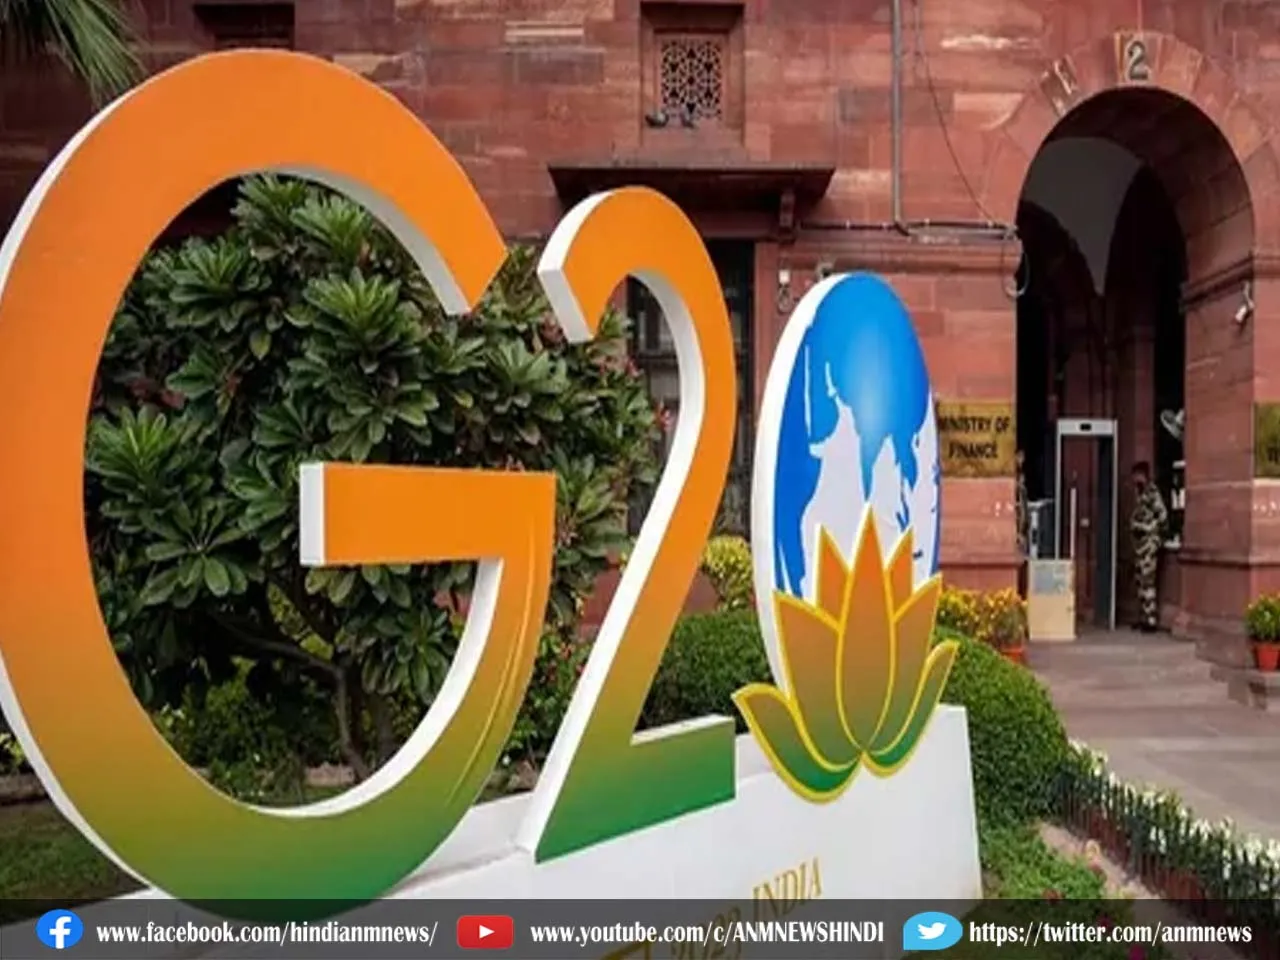 G20 summit : राष्ट्रीय राजधानी दिल्ली में भव्य तैयारी